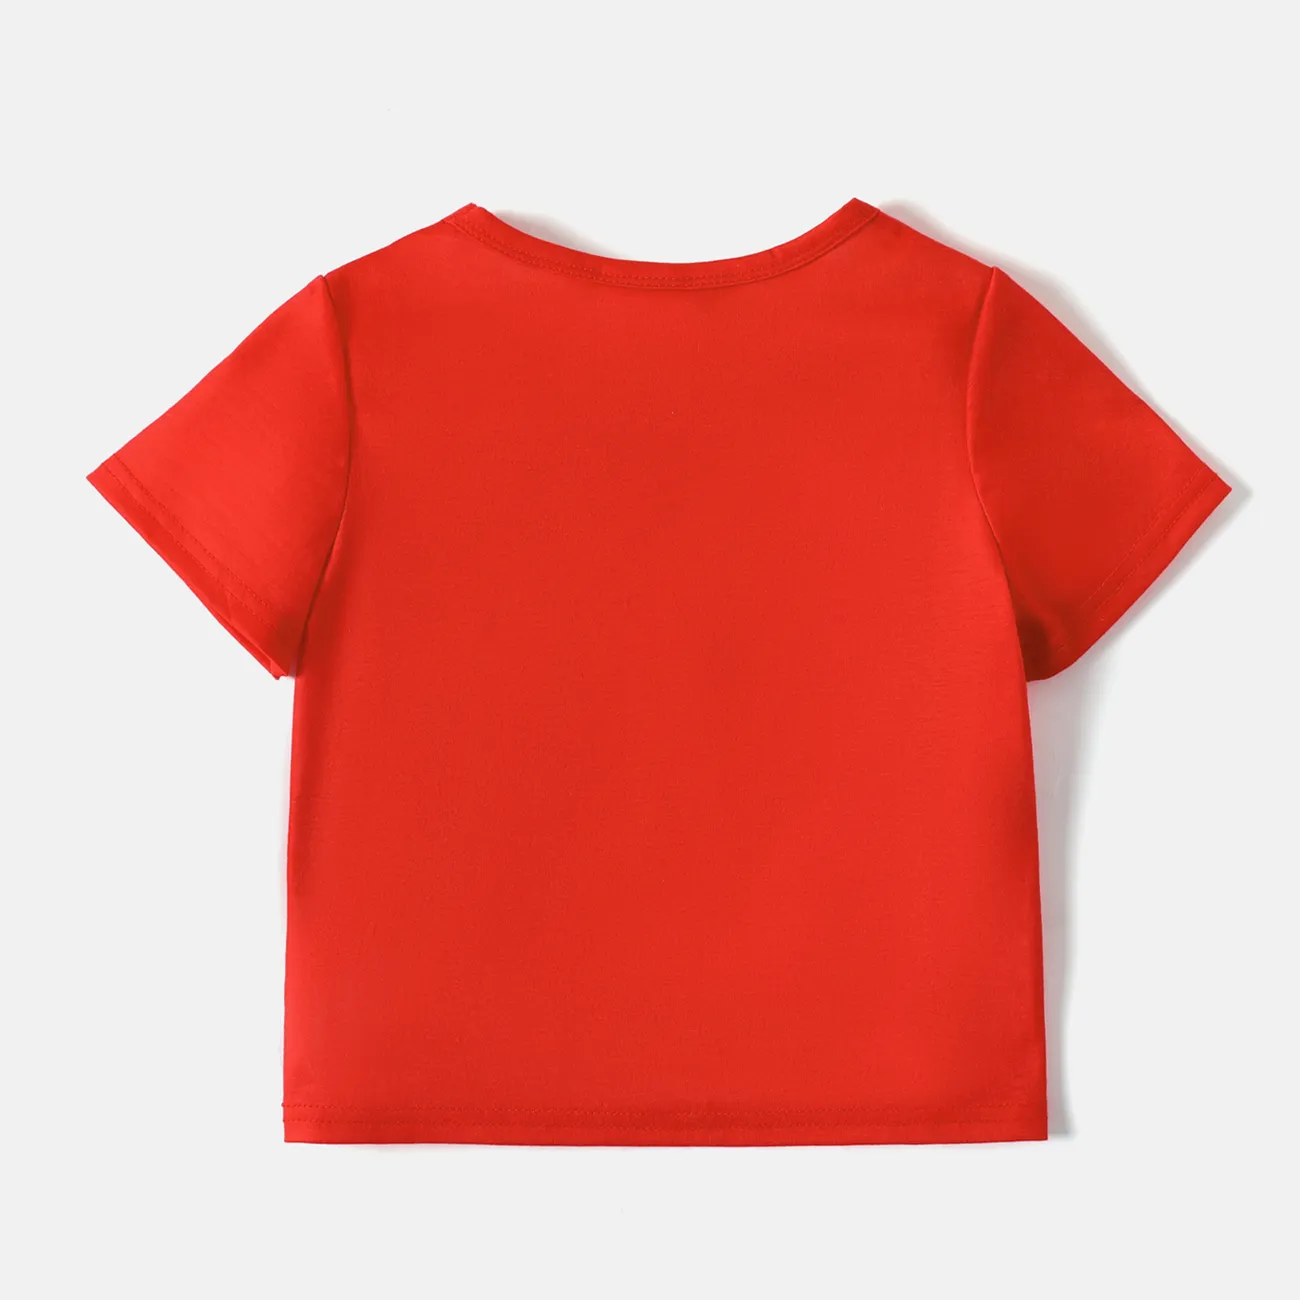 Helfer auf vier Pfoten Kleinkinder Unisex Kindlich Hund Kurzärmelig T-Shirts rot big image 1